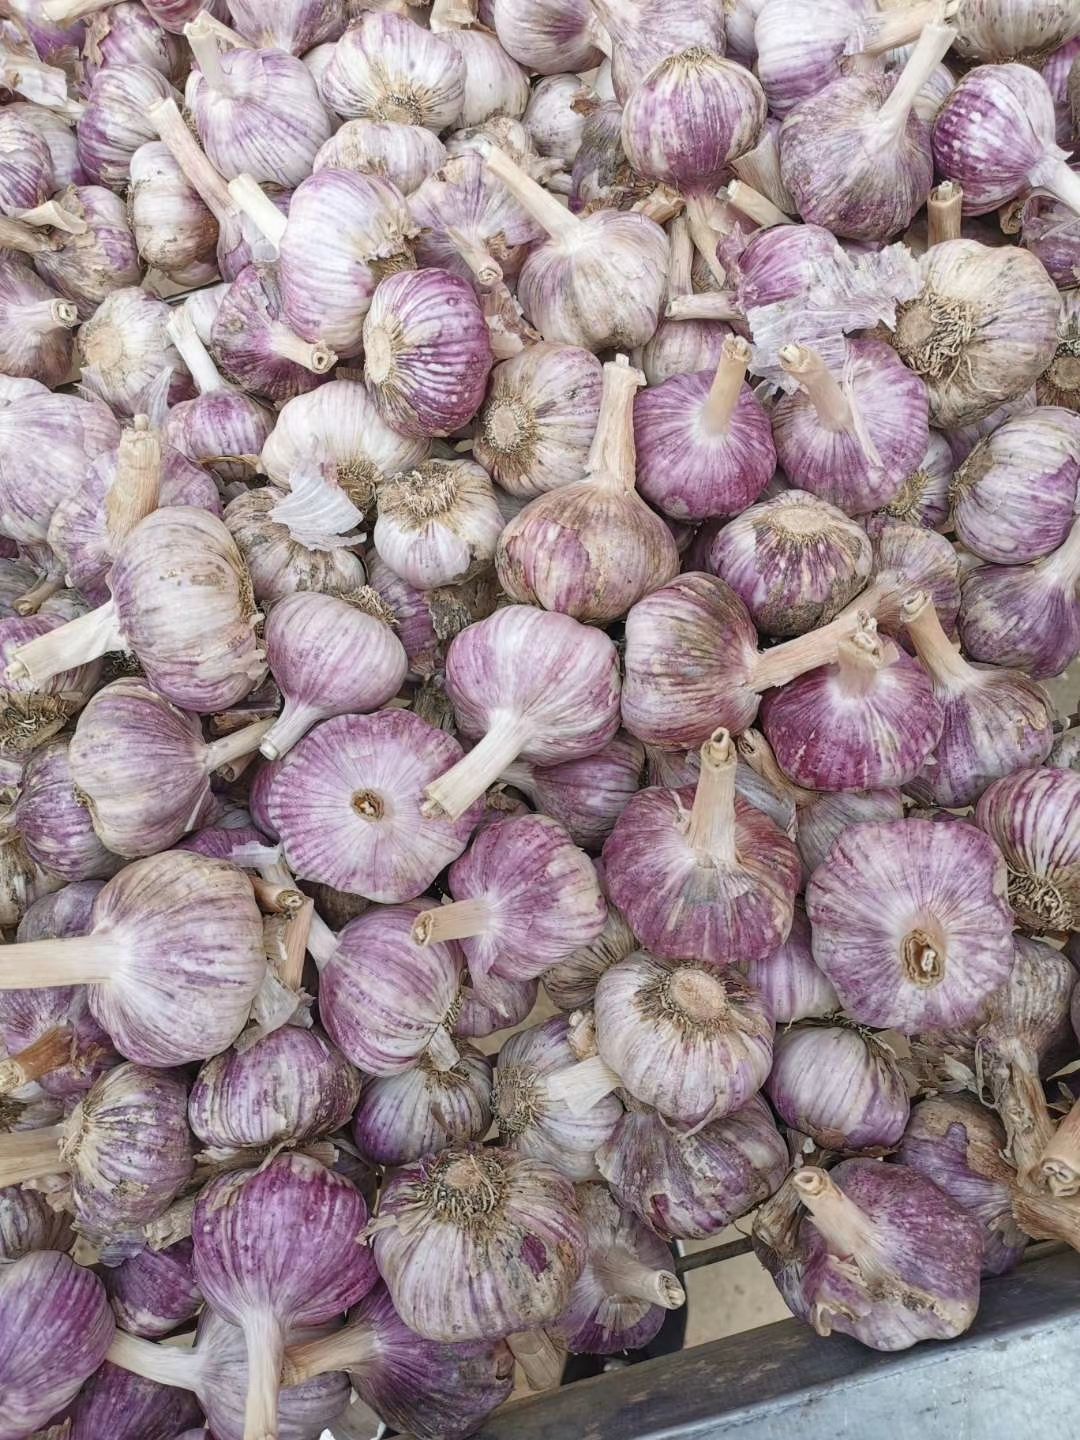 中牟县红皮蒜  紫皮大蒜，蒜米，冷库各种规格蒜，支持电商一件代发。